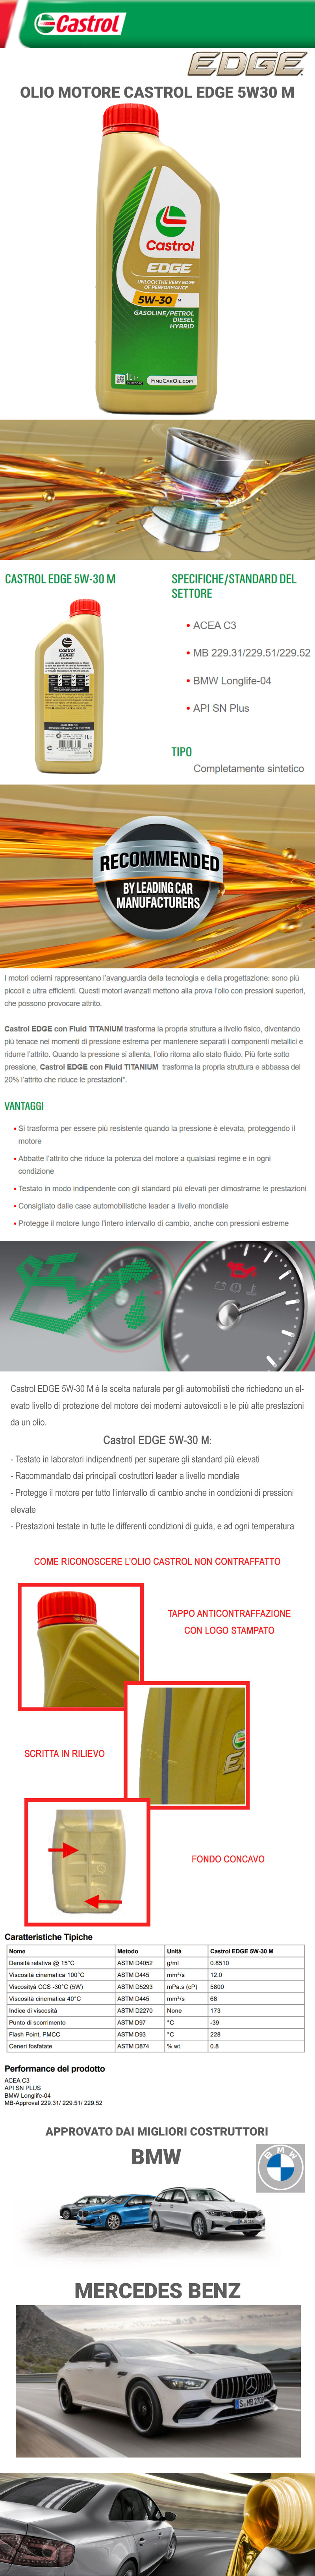 9,15€/L] 15BF6A 6L CASTROL EDGE M 5W30 BMW LONGLIFE 04 MB 229.31